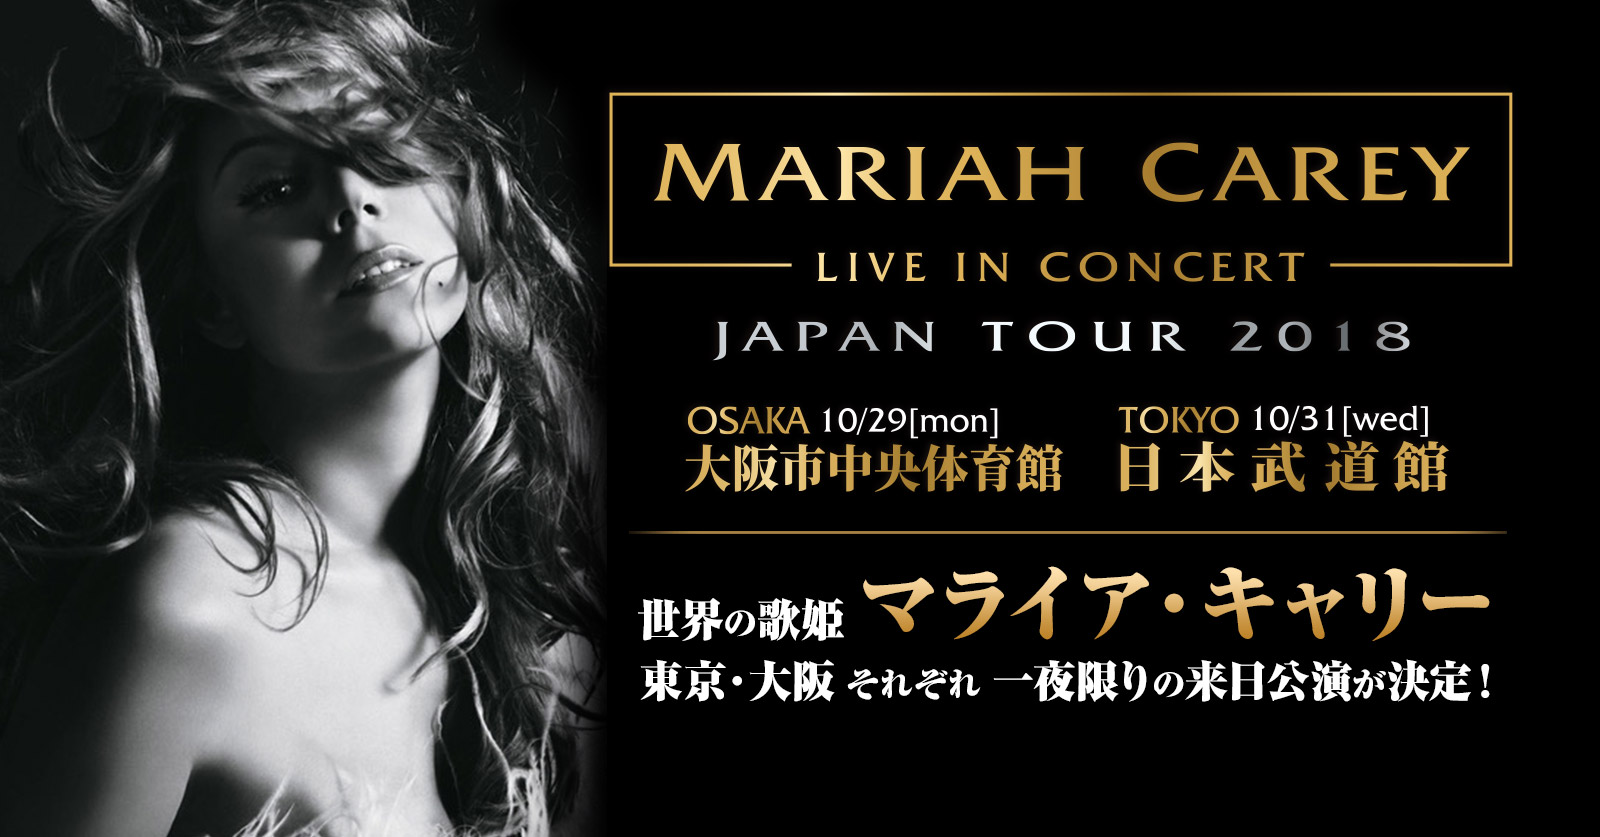 [マライア・キャリー] MARIAH CAREY in Concert JAPAN TOUR 2018 来日公演特設サイト